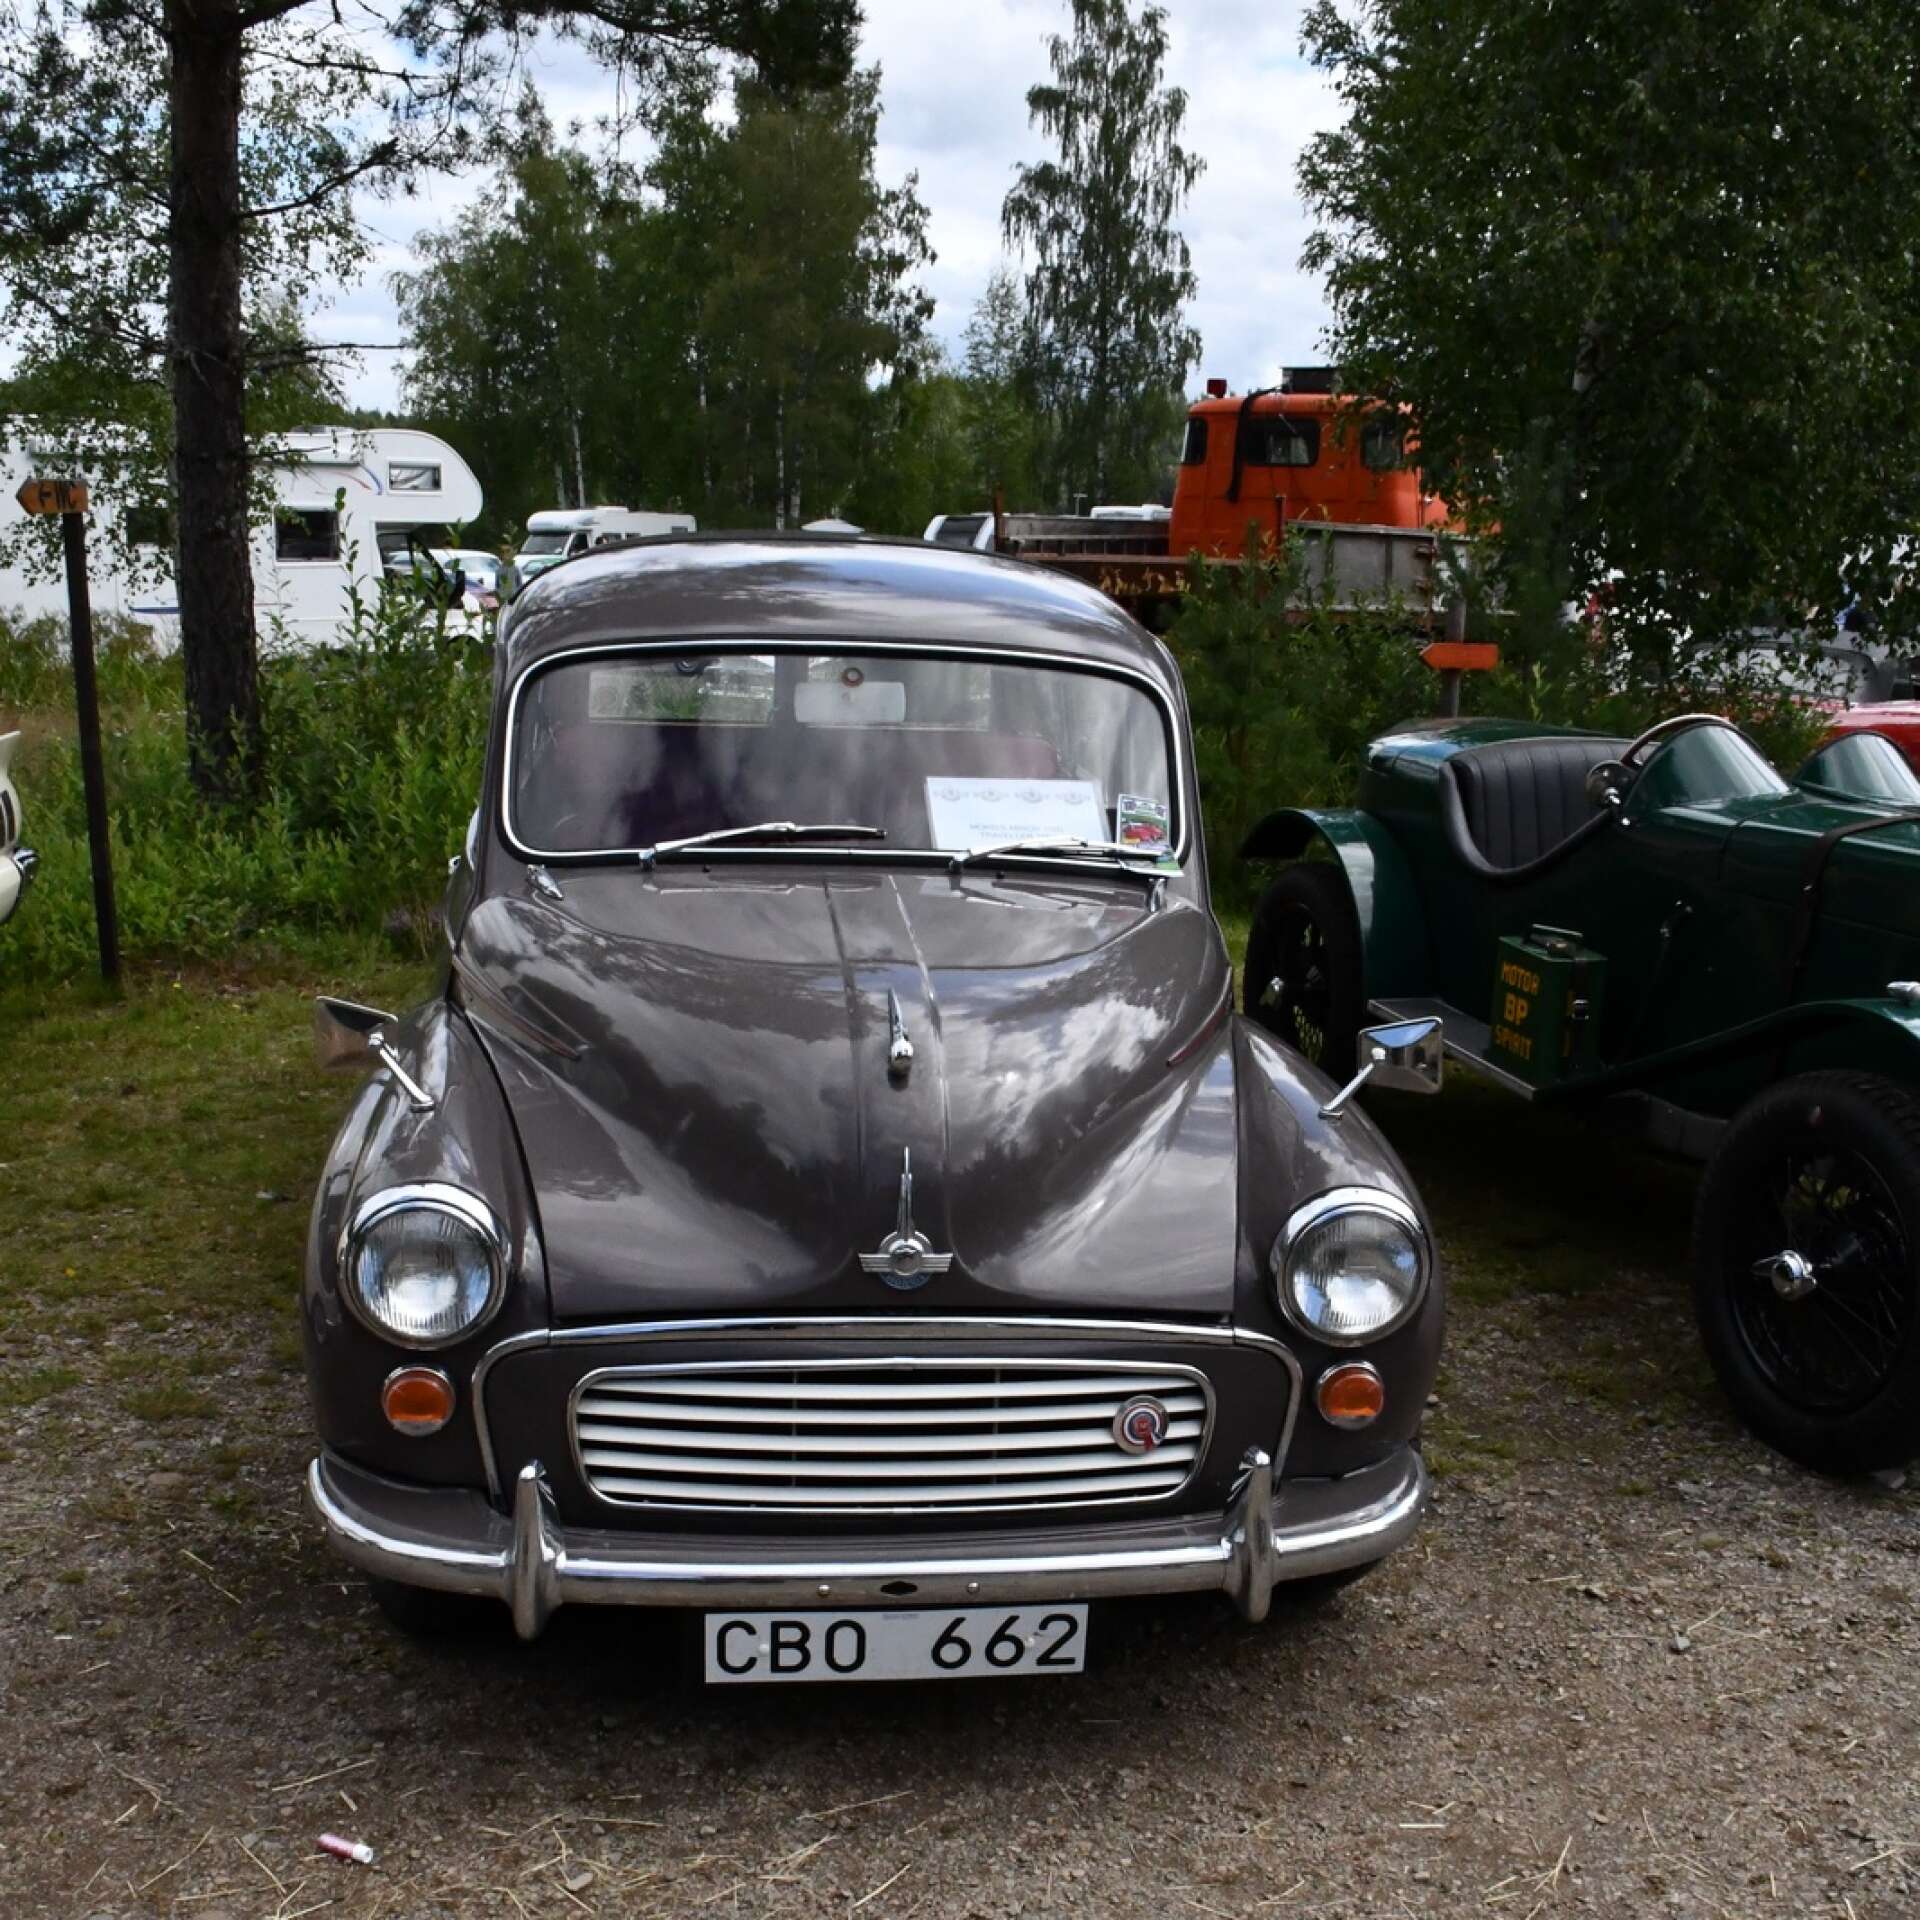 En av de tio bilar som valts ut av juryn till bilparaden: En Morris Minor Traveller 1967. Ägare Erland Persson, Edsvalla.